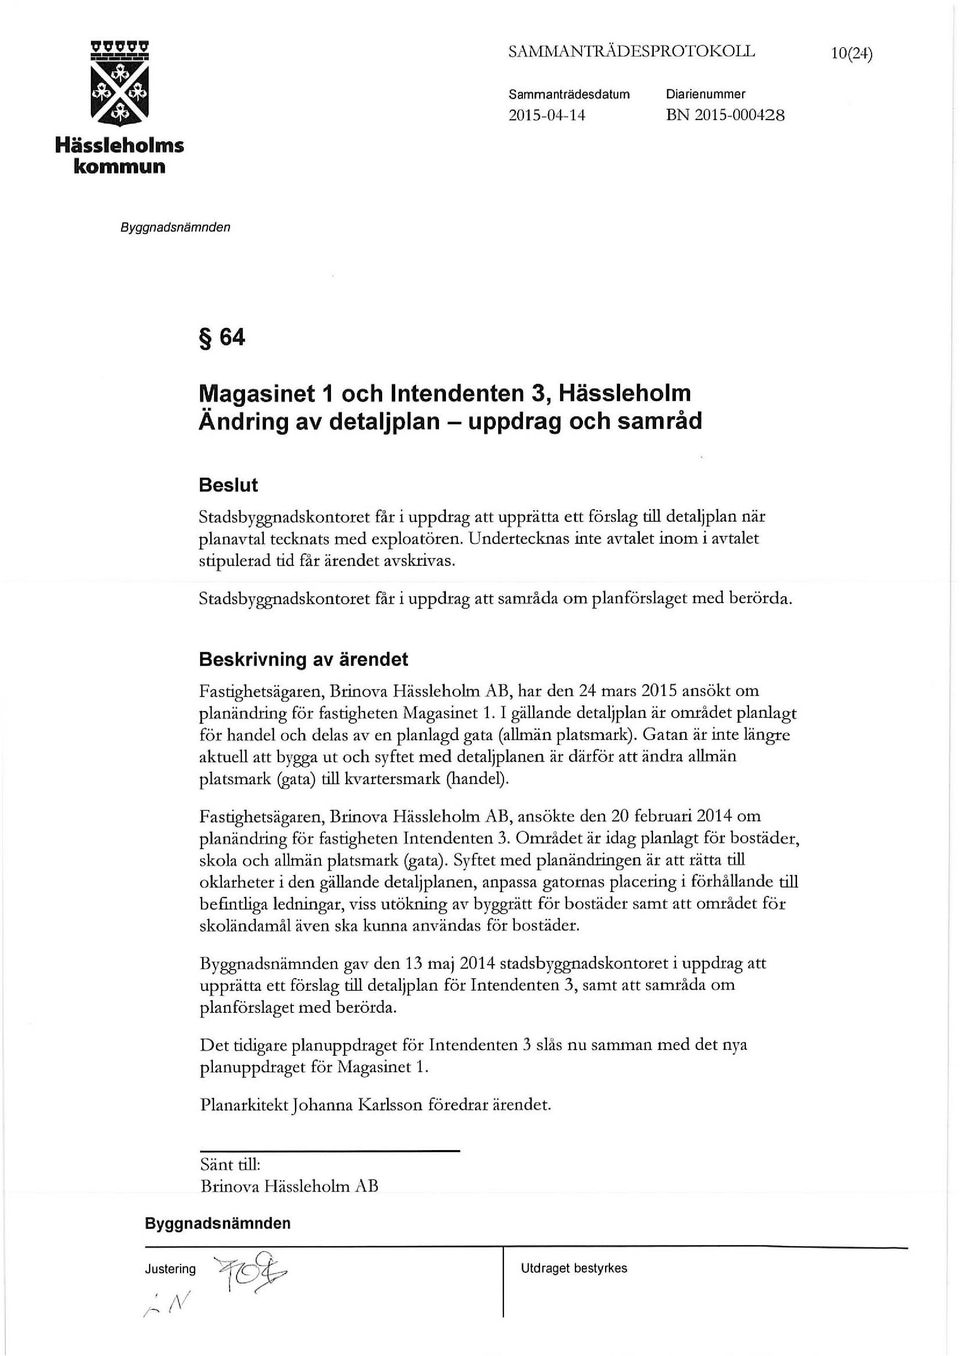 stadsbyggnadskontoret får i uppdrag att samråda om planförslaget med berörda. Fastighetsägaren, Brinova Hässleholm AB, har den24mars 2015 ansökt om planändring för fastigheten Magasinet 1.